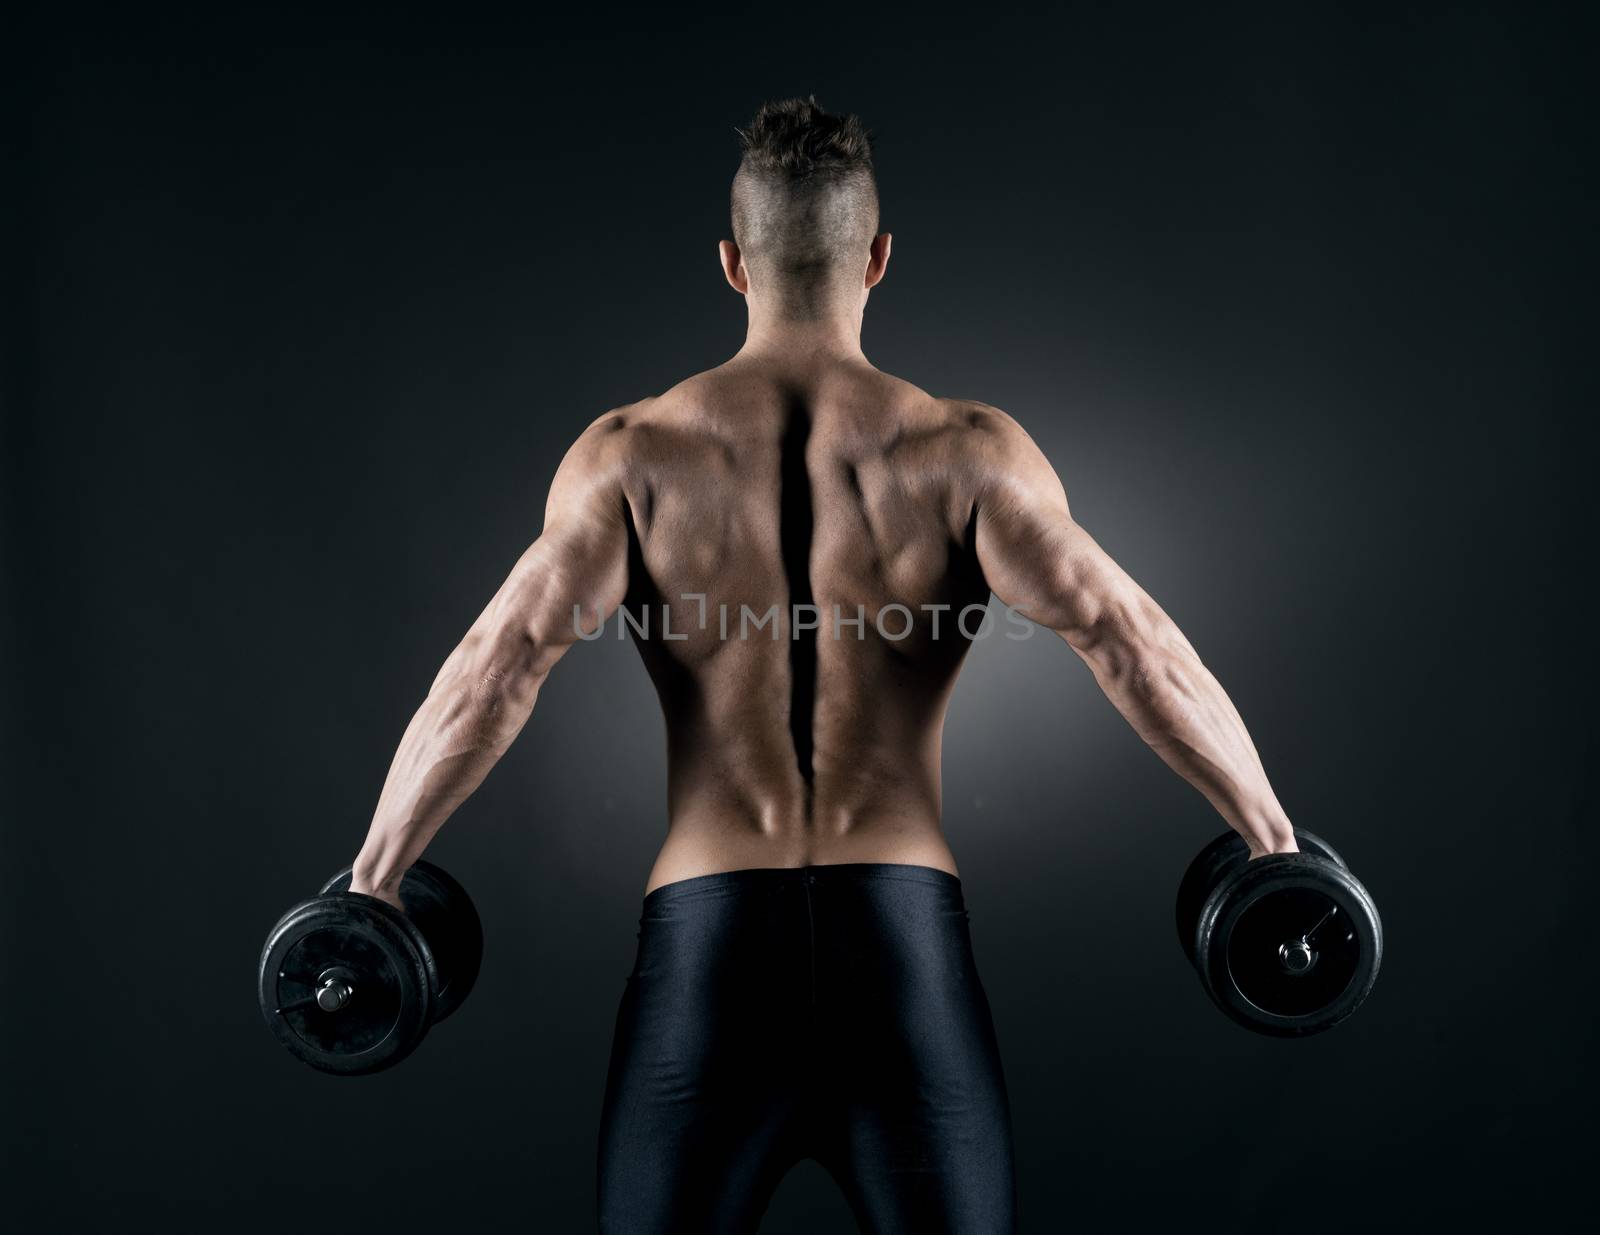 Muscular attractive man weightlifting on dark background.